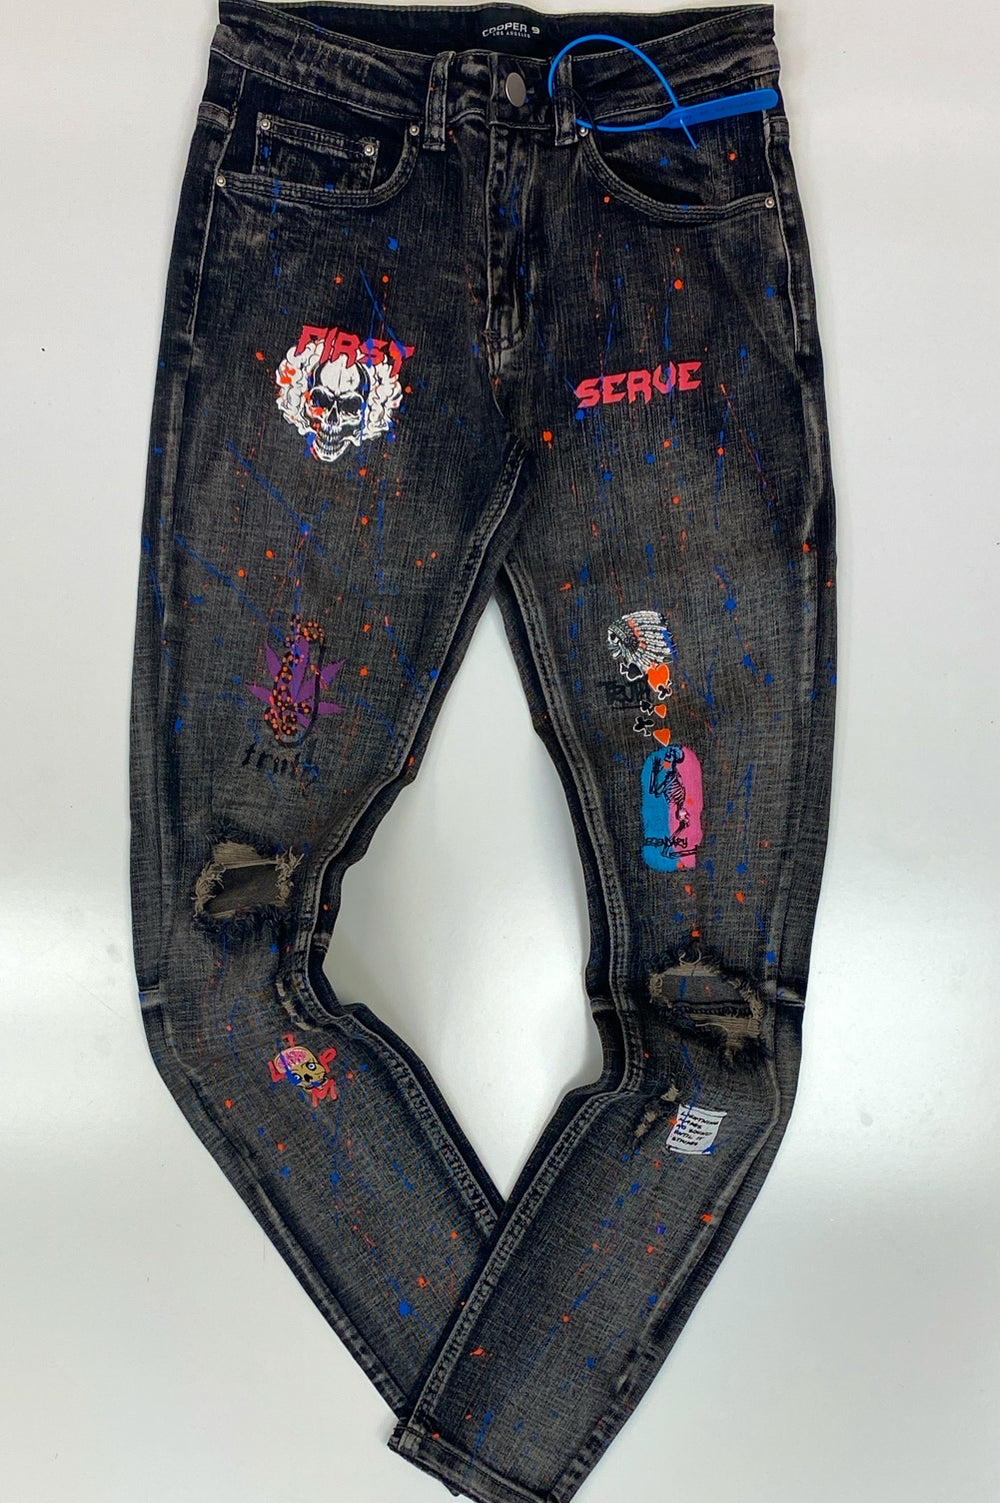 Cooper 9- first serve graphic jeans (dark wash)